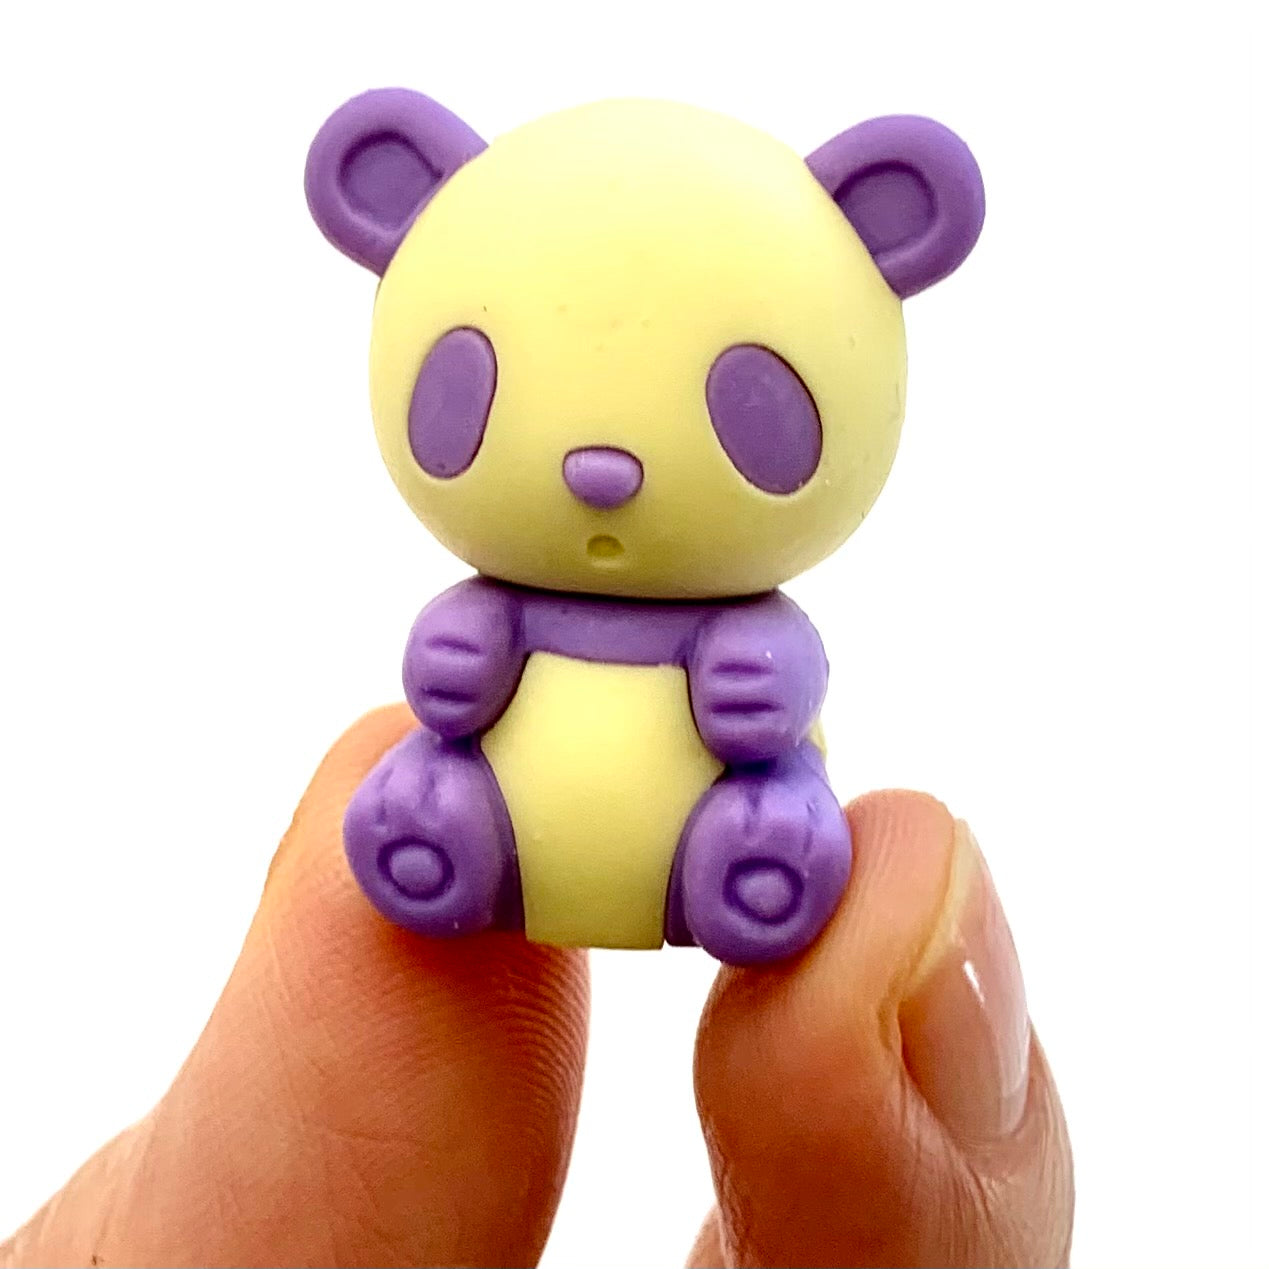 384531 IWAKO Colorz Panda -1 box of 5 Erasers